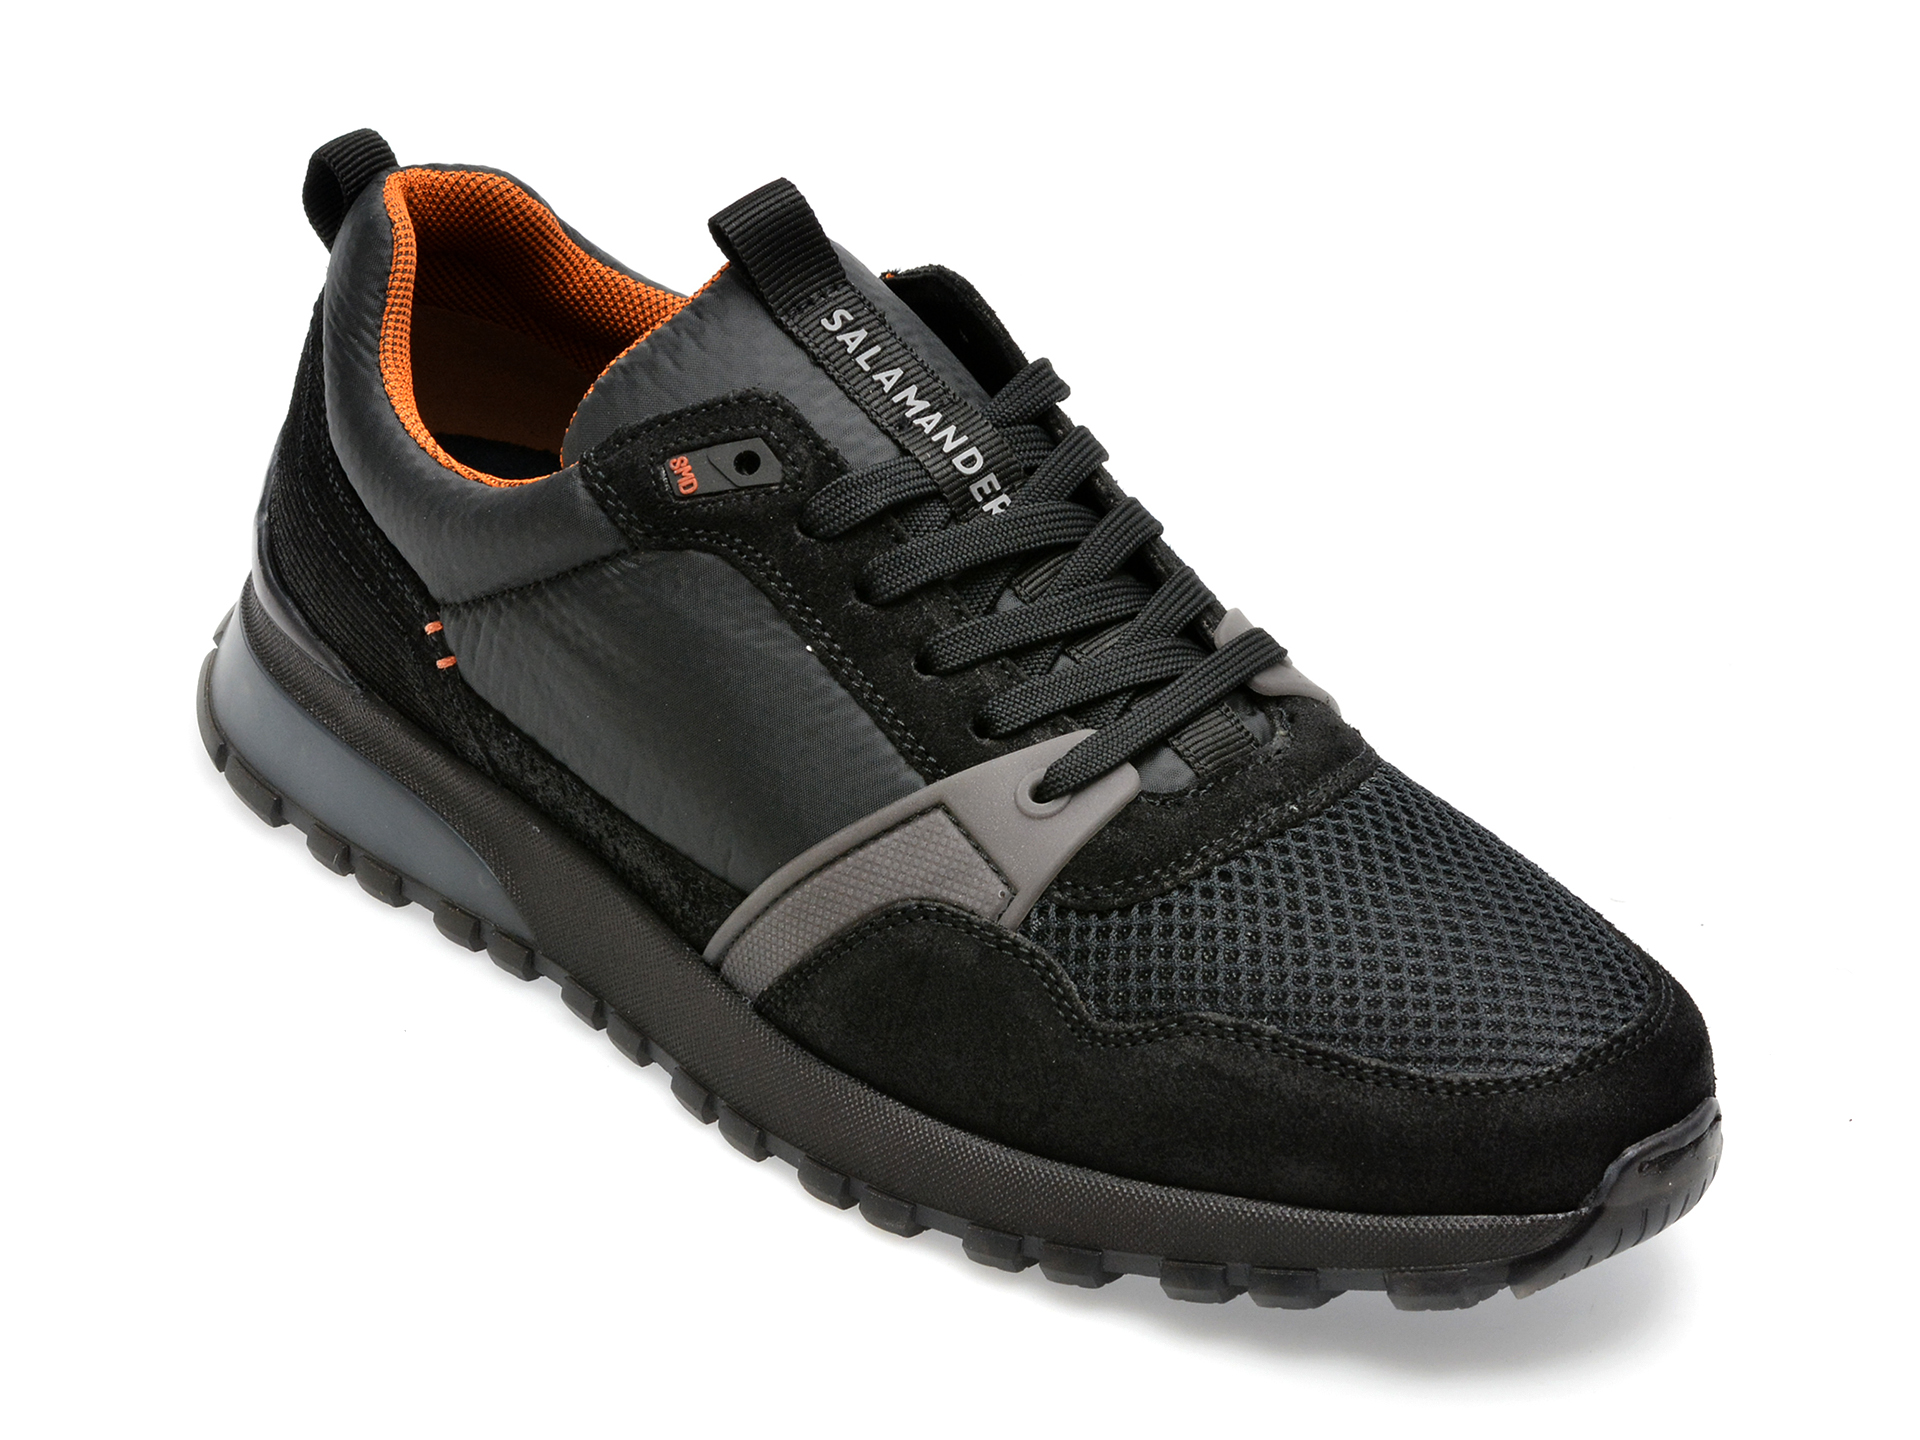 Pantofi SALAMANDER negri, 48802, din material textil si piele intoarsa /barbati/pantofi